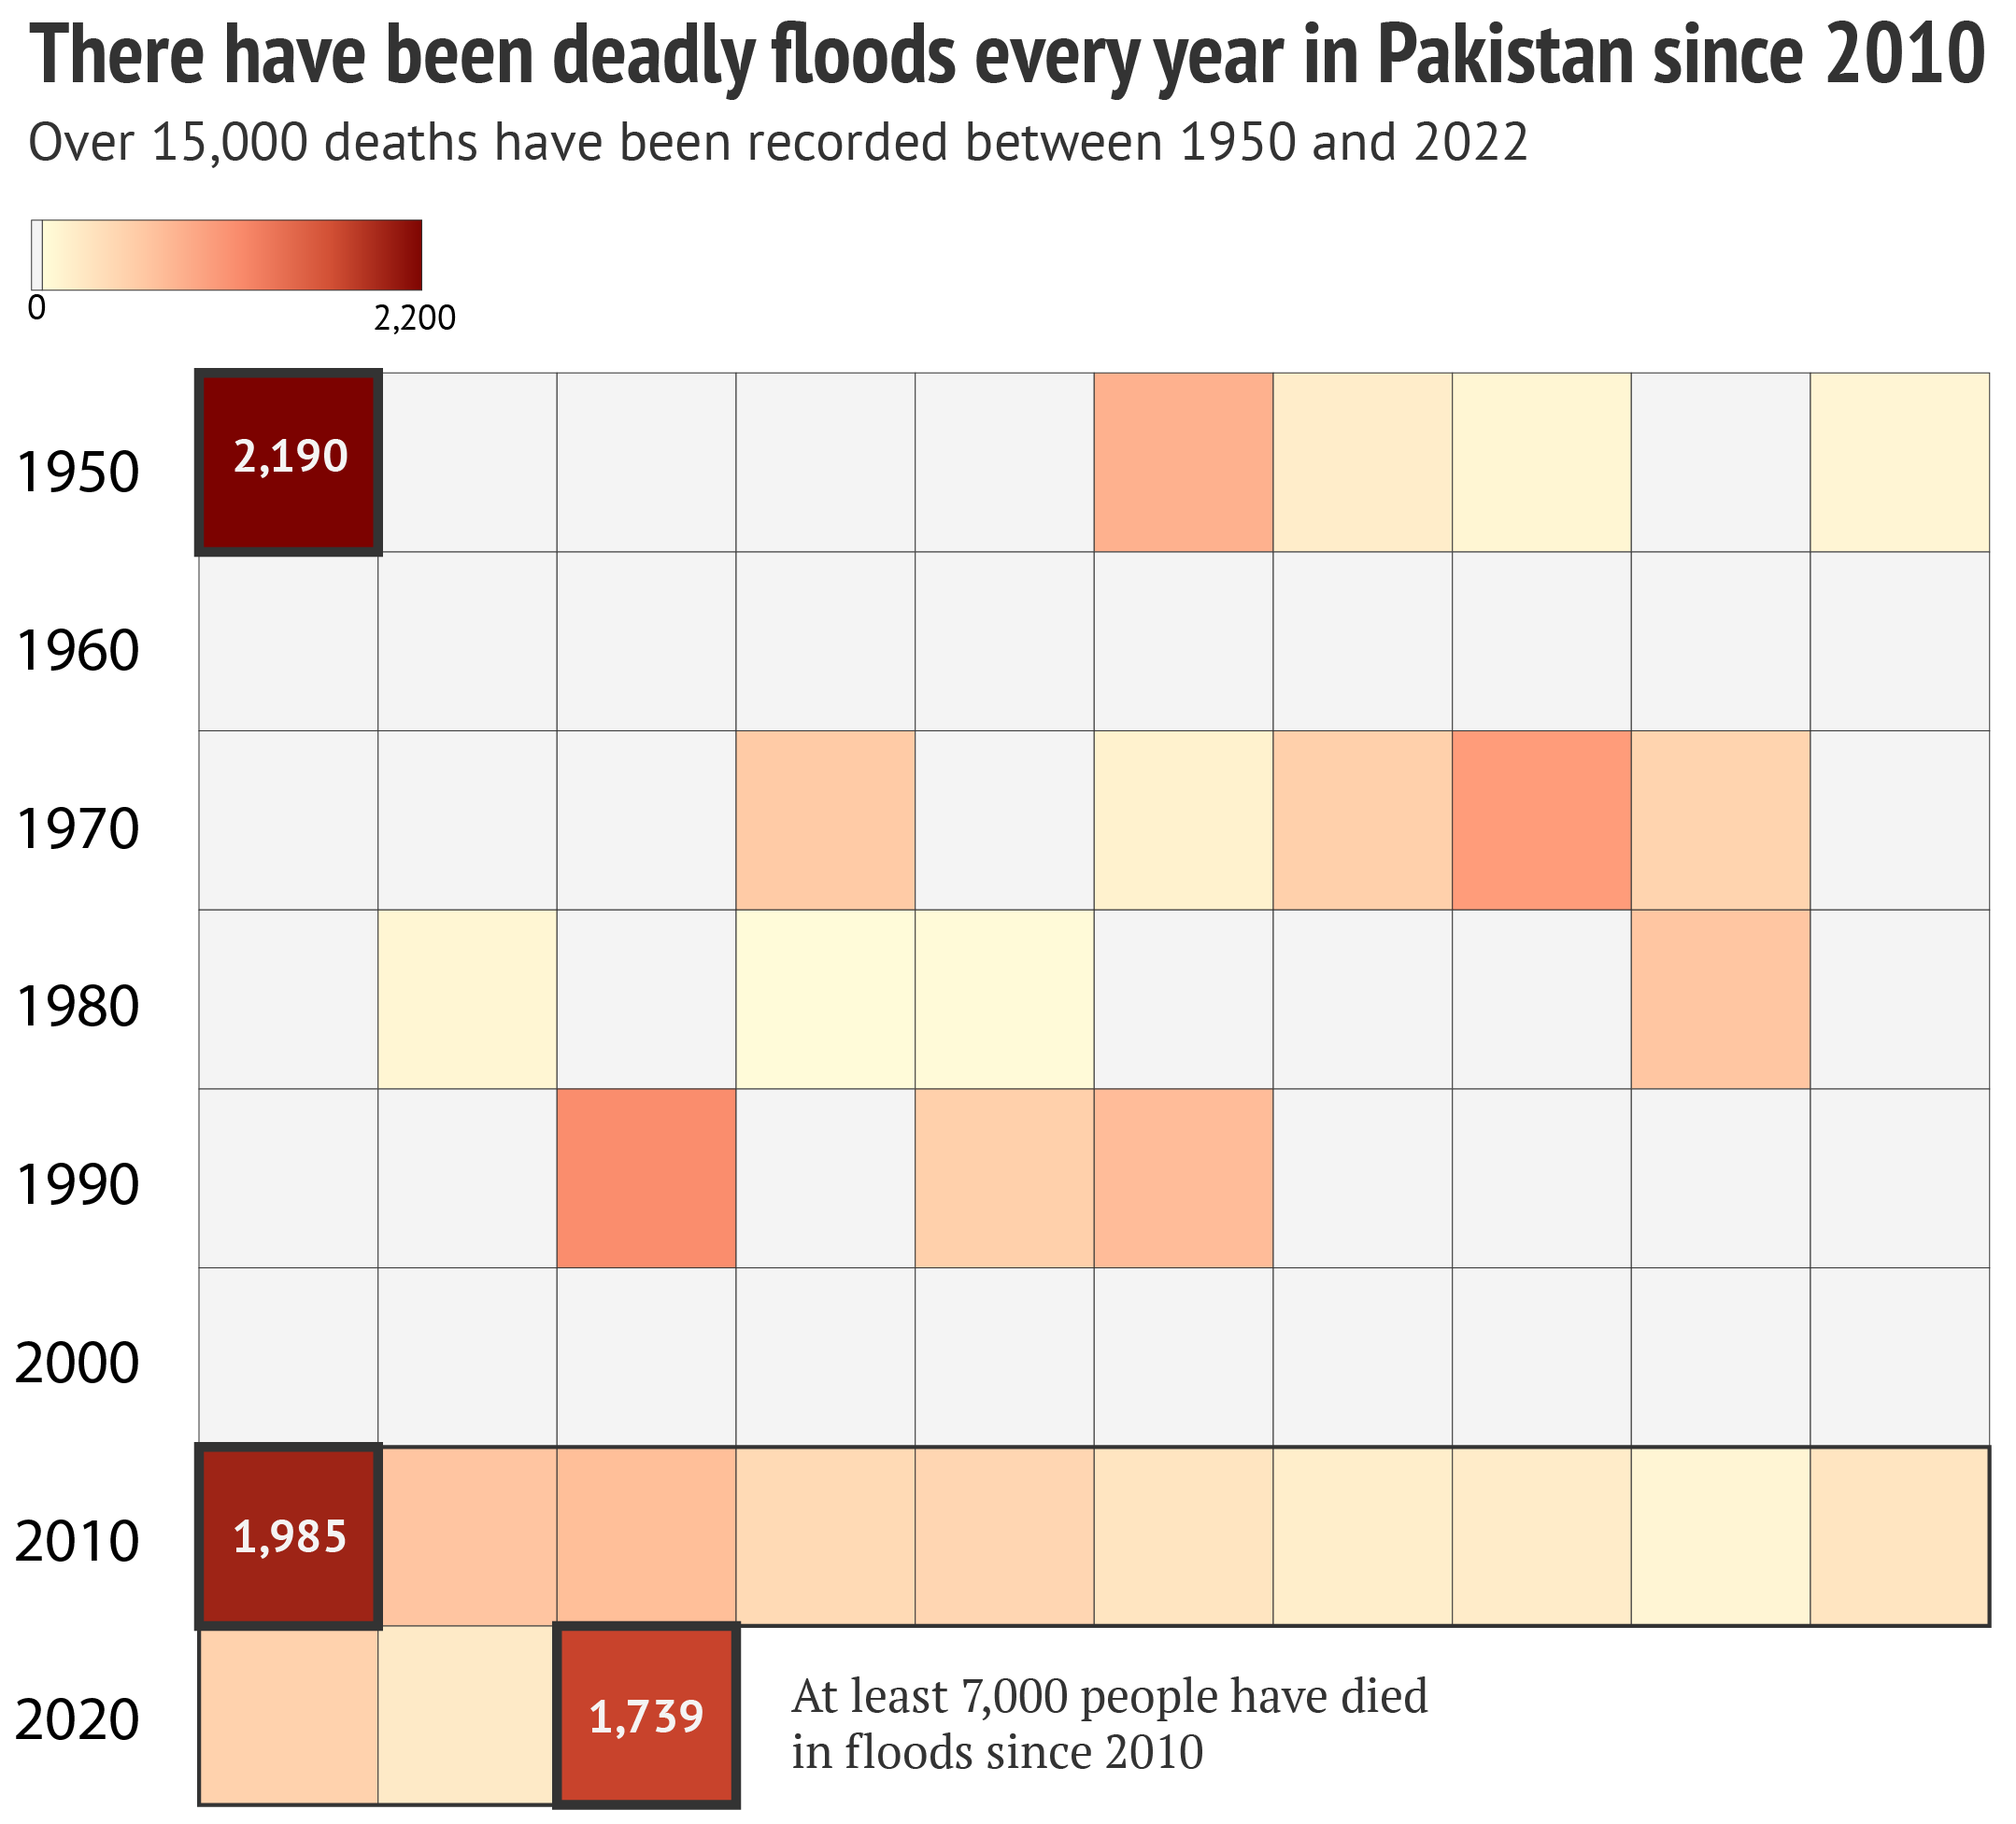 Grafik, die zeigt, dass es in Pakistan seit 2010 jedes Jahr zu tödlichen Überschwemmungen kommt.